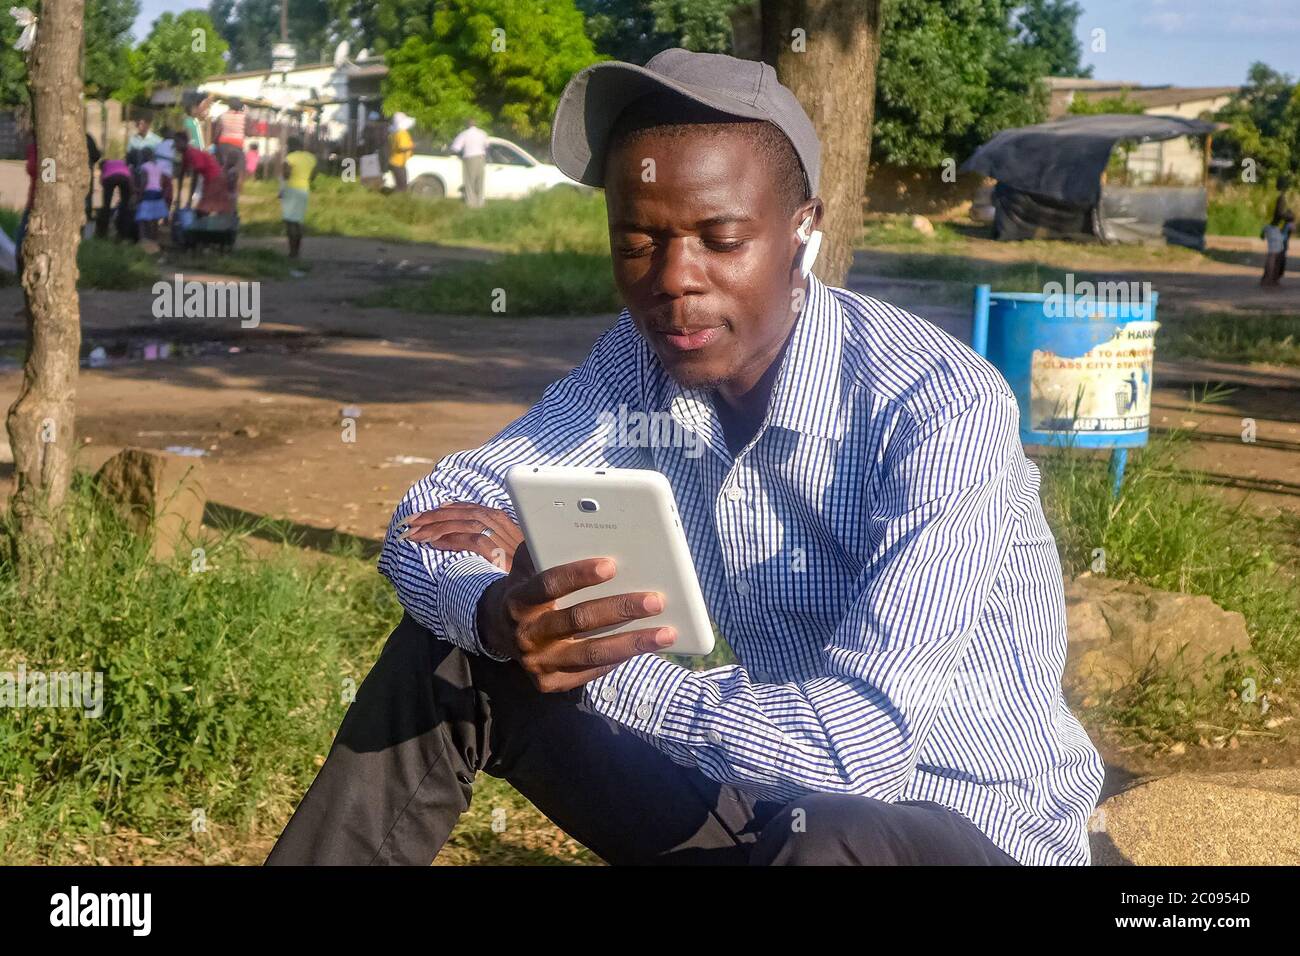 Da un lavoro che ha co-scritto chiamato "il gioco dell'amore", Sikahika dice che ha guadagnato circa 4,000 dollari. Distribuisce gratuitamente porzioni delle sue opere, poi addebita al suo pubblico di leggere di più. I lettori di libri di social media dicono di apprezzare questi libri per la loro accessibilità. (Sharon Munjenjema, GPJ Zimbabwe) Foto Stock